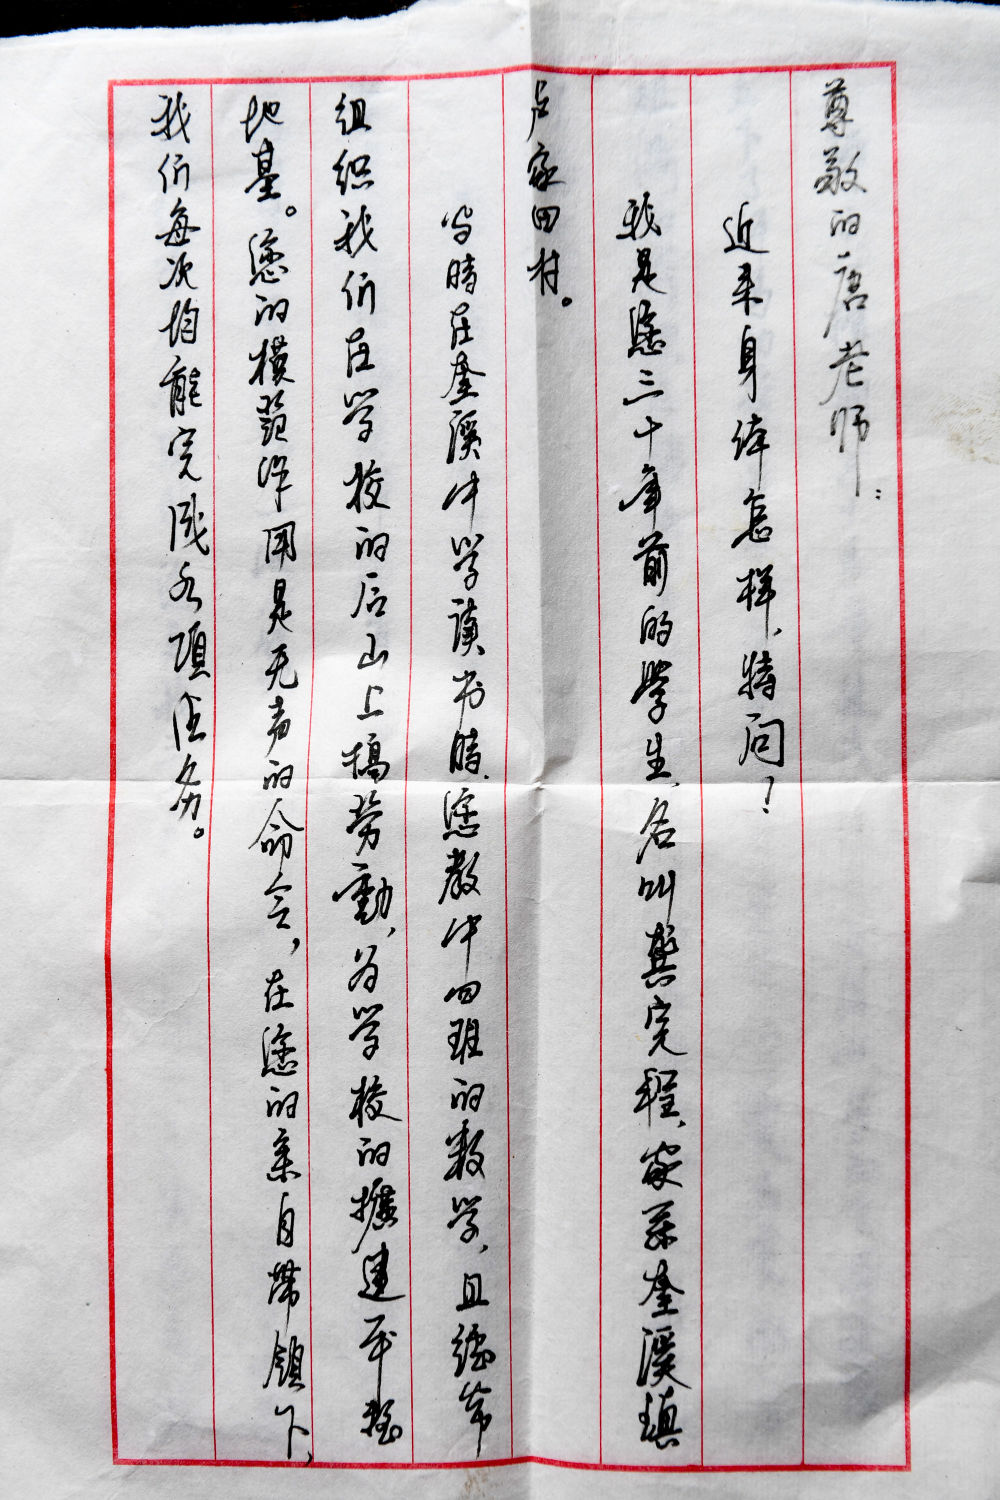 这是学生给唐上君写的书信（9月8日摄）。